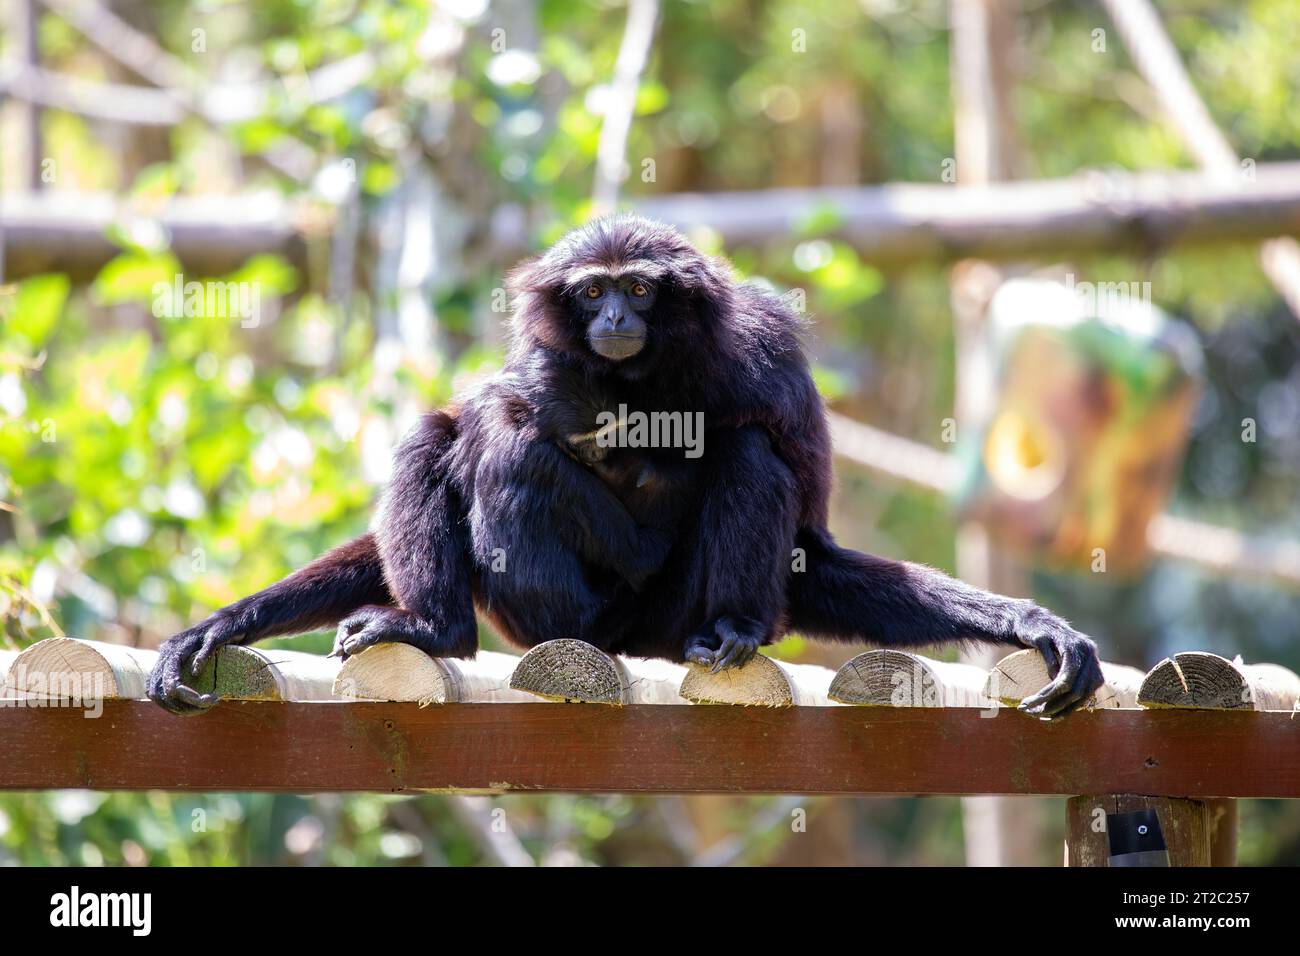 Der agile Gibbon ist ein kleiner Affe, der in den Regenwäldern Südostasiens beheimatet ist. Es ist bekannt für seine akrobatischen Fähigkeiten und die Fähigkeit, durch den Tre zu schwingen Stockfoto